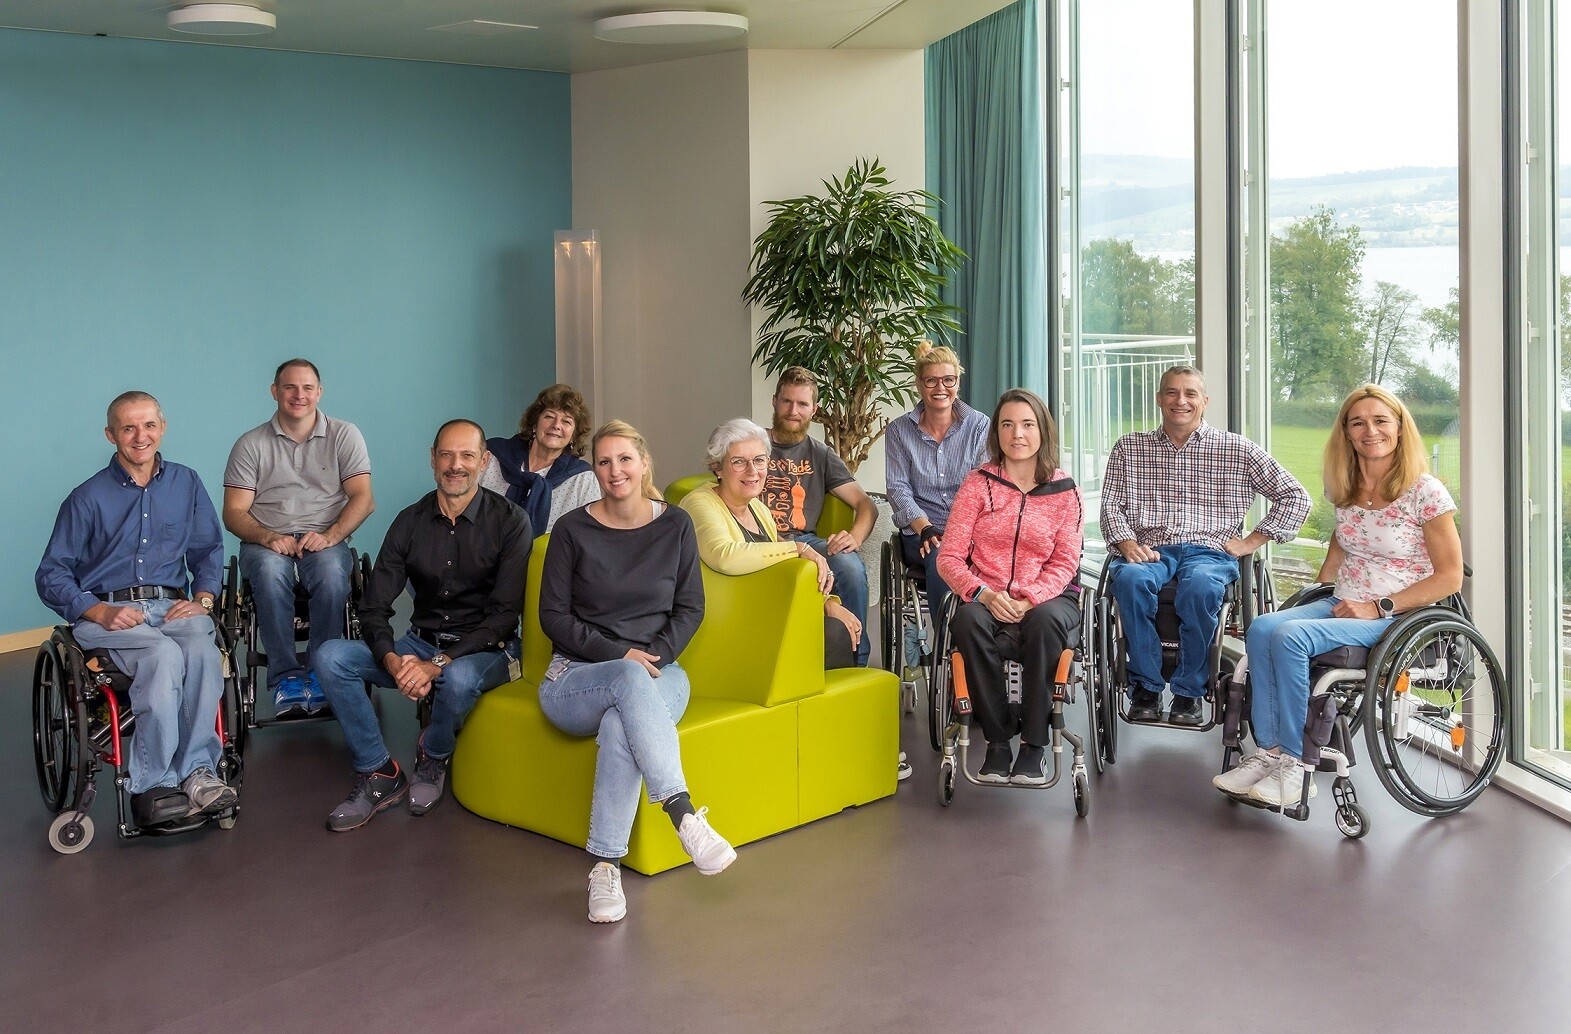 L'équipe de Peer Counselling du CSP est composée de personnes avec différents handicaps et expériences, y compris de proches de personnes paraplégiques. La photo de groupe montre l'équipe de pairs composée de onze personnes.